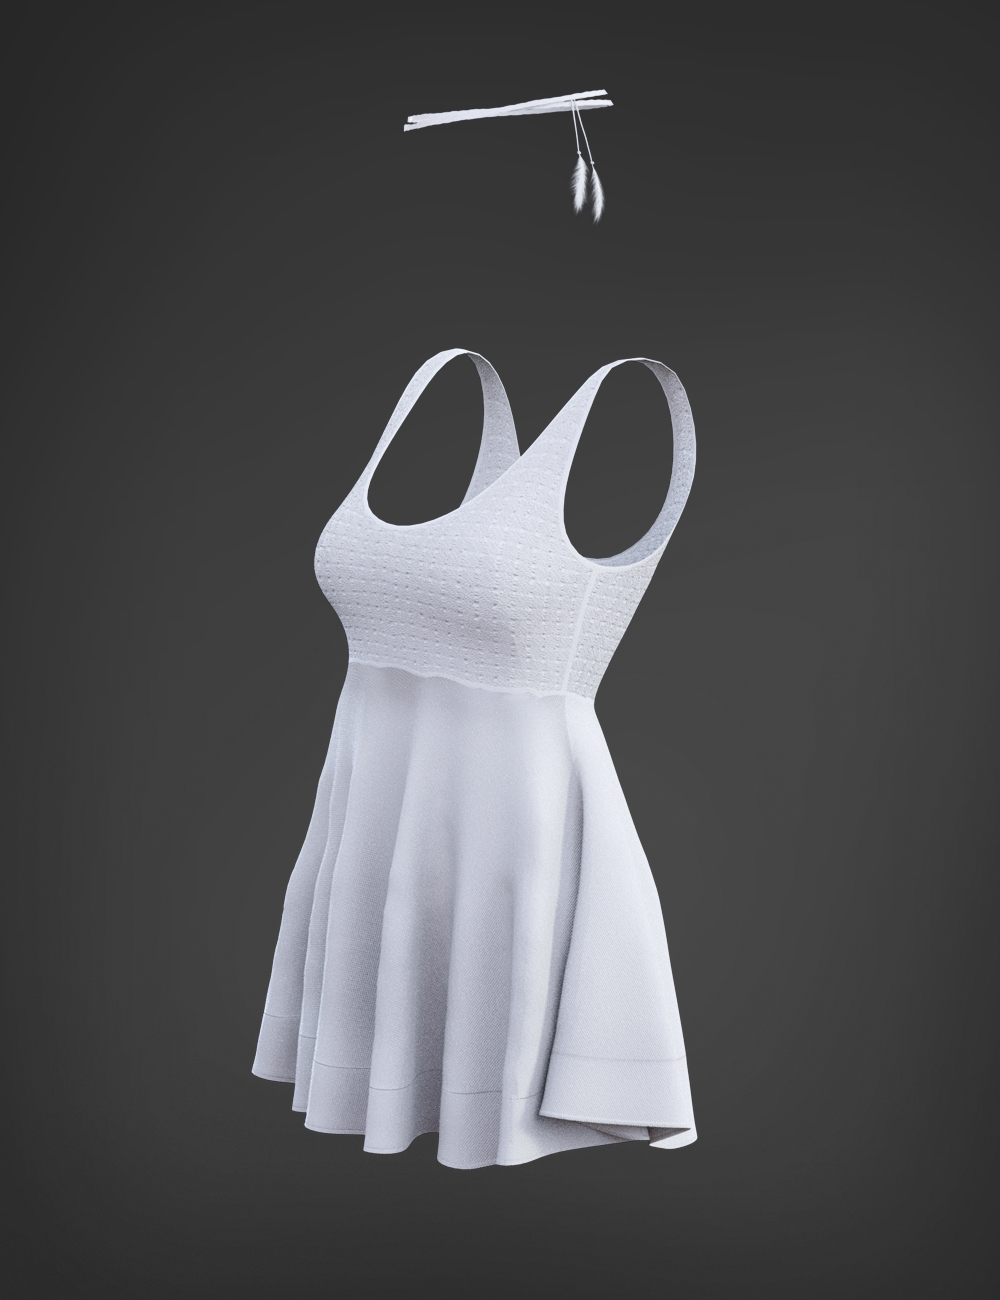 X-Fashion Crochet Dress for Genesis 3 Female(s) by: xtrart-3d, 3D Models by Daz 3D